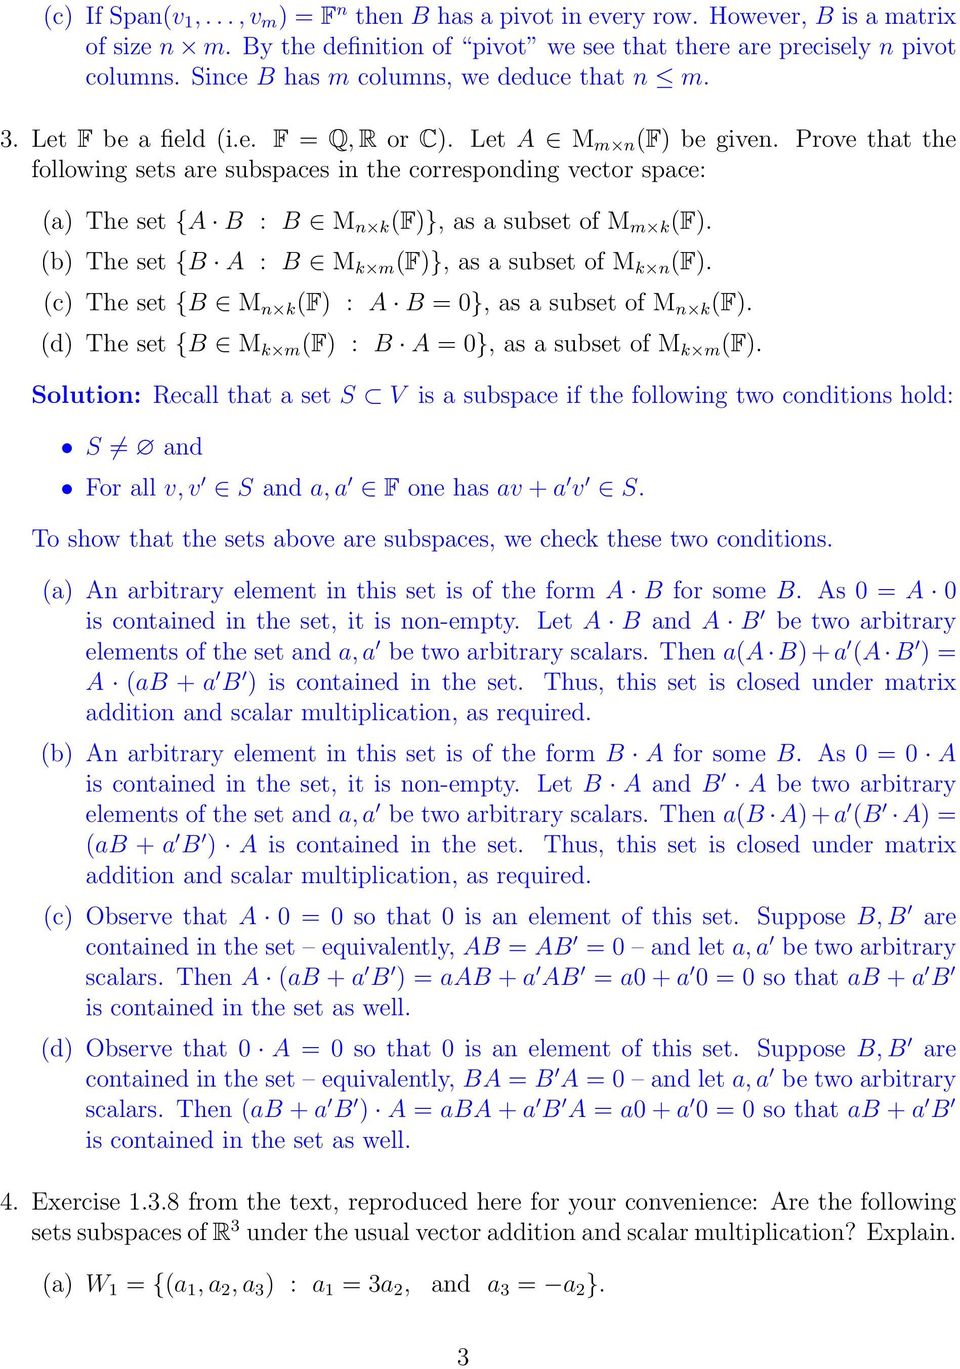 subset of M m k (F) (b) The set {B A : B M k m (F)}, as a subset of M k n (F) (c) The set {B M n k (F) : A B = 0}, as a subset of M n k (F) (d) The set {B M k m (F) : B A = 0}, as a subset of M k m